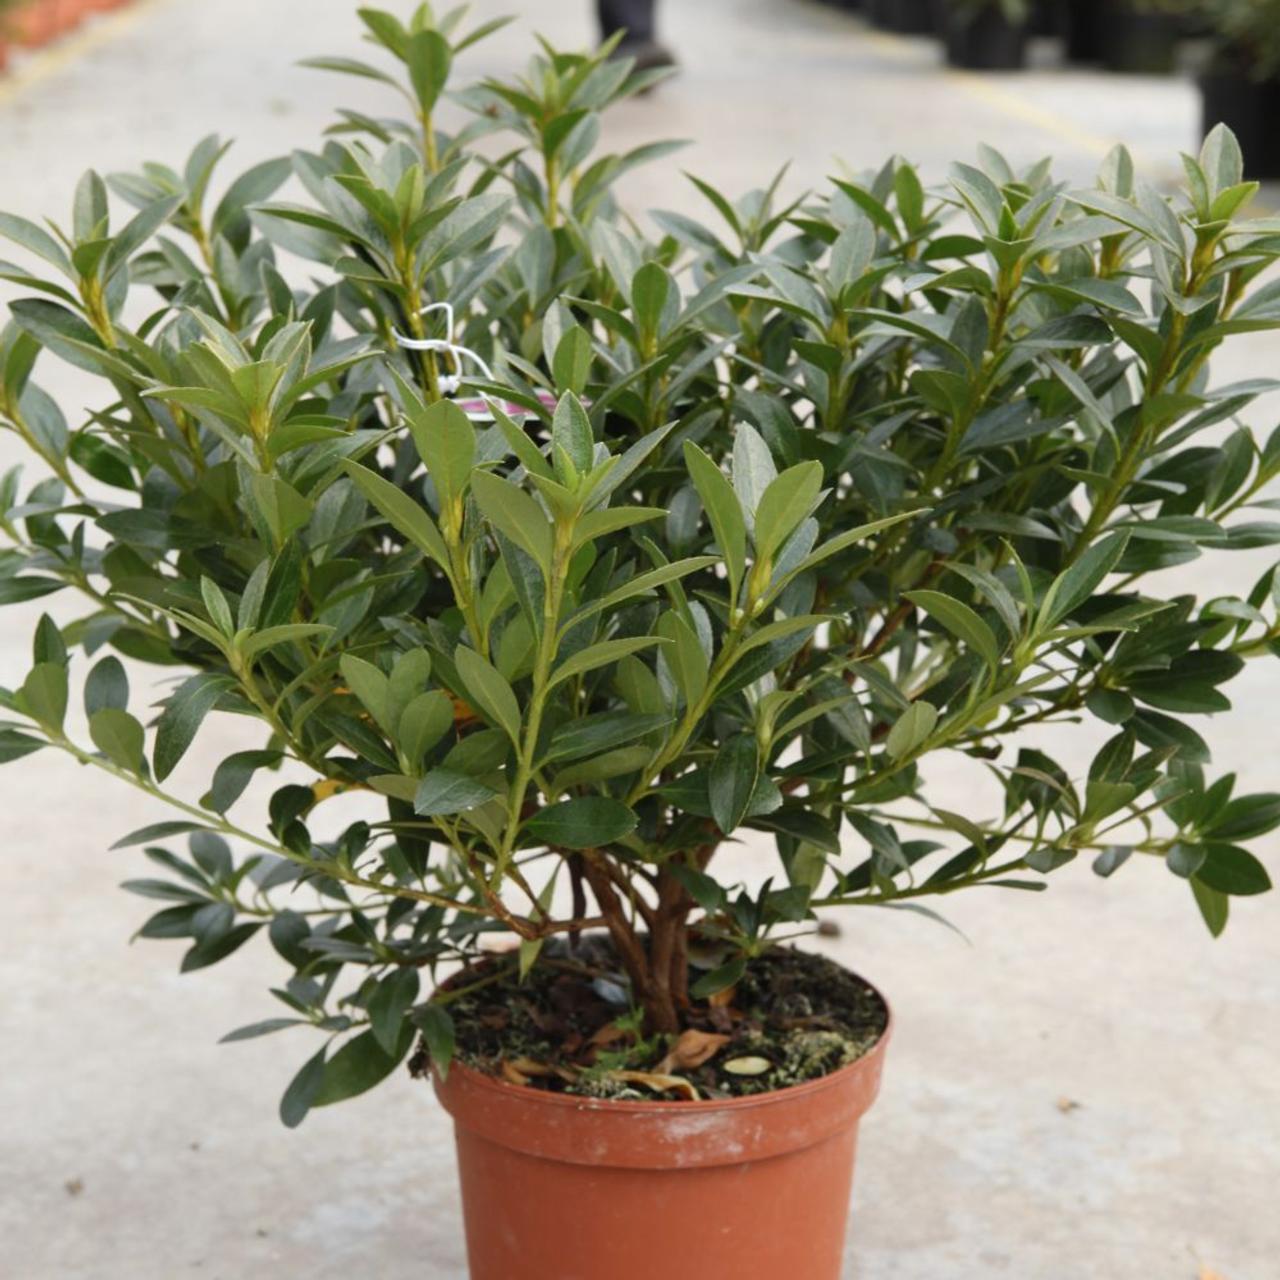 Rhododendron (AJ) 'Blaue Donau' plant